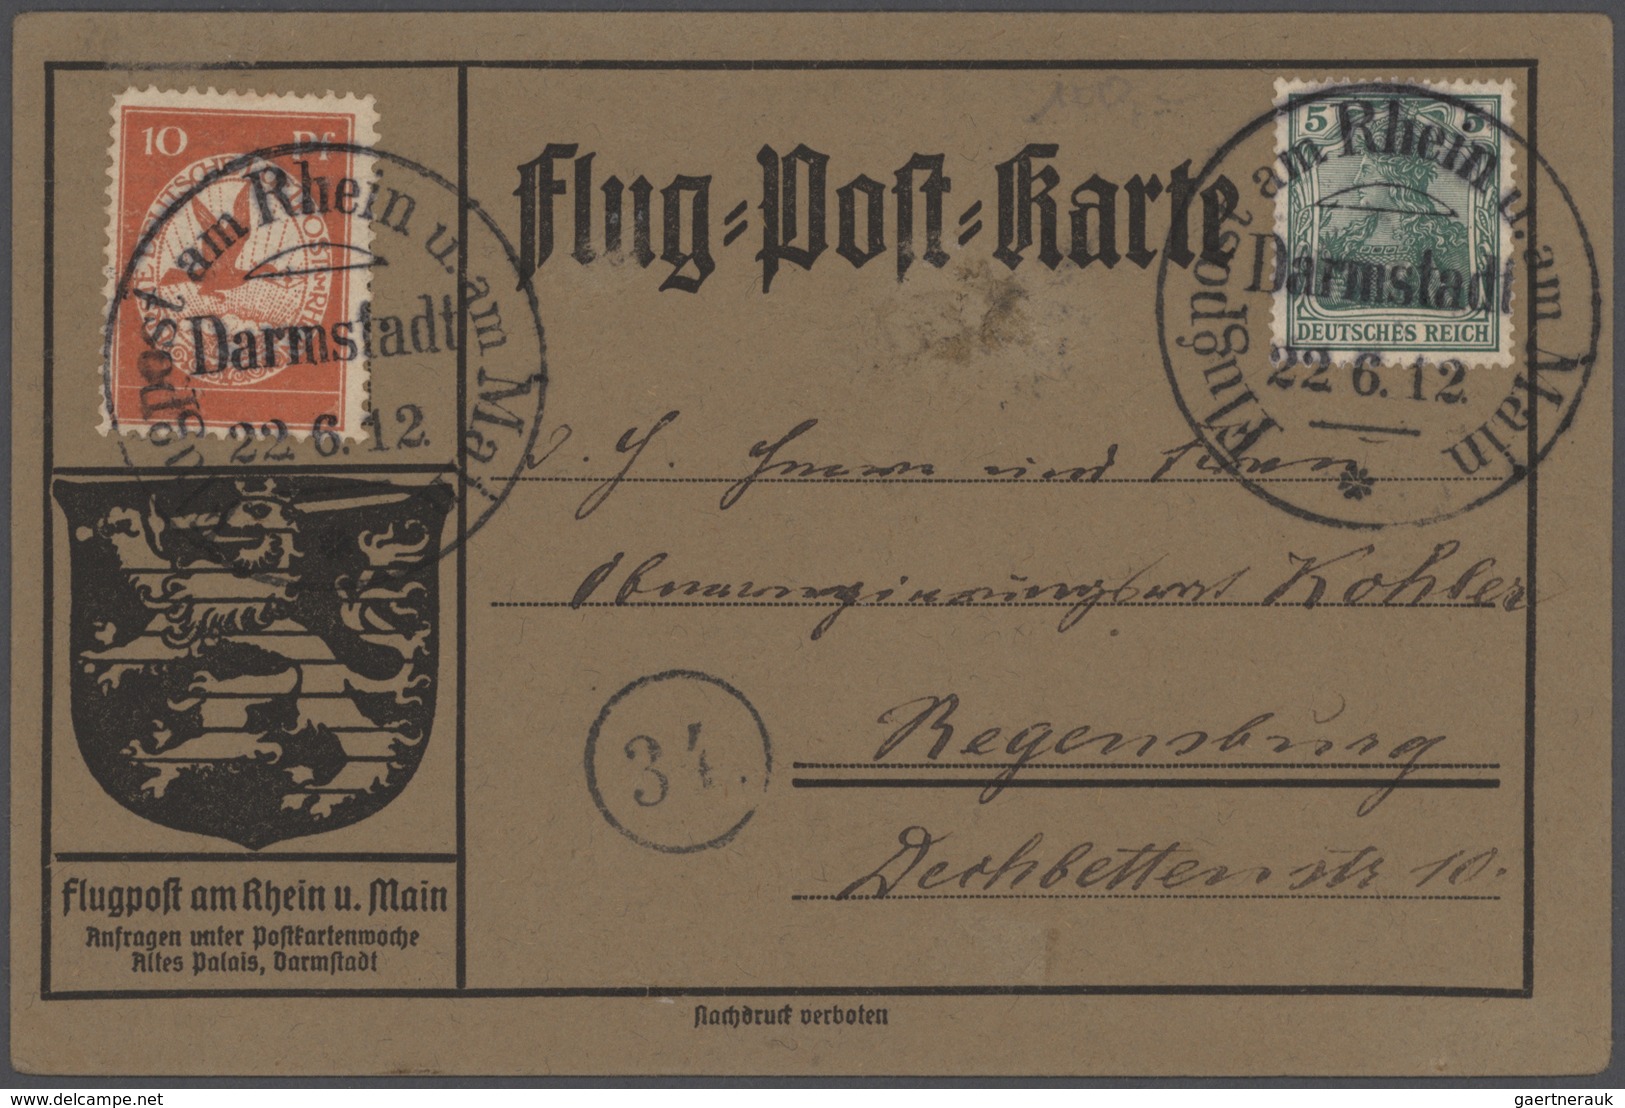 Deutsches Reich: 1872/1919, vielseitige Partie von fast 500 Briefen, Karten und Ganzsachen von Brust